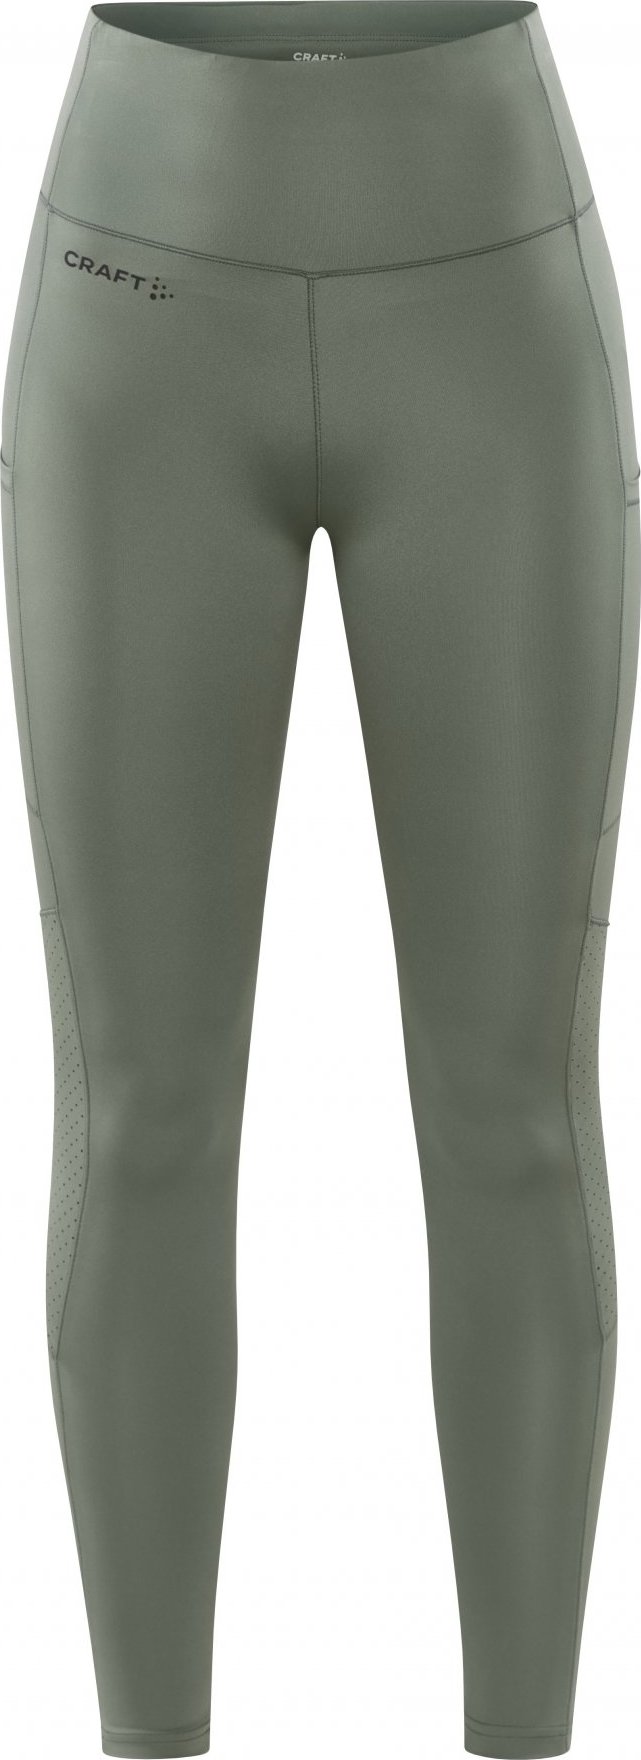 Dámské elastické kalhoty CRAFT Adv Essence 2 zelené Velikost: XS